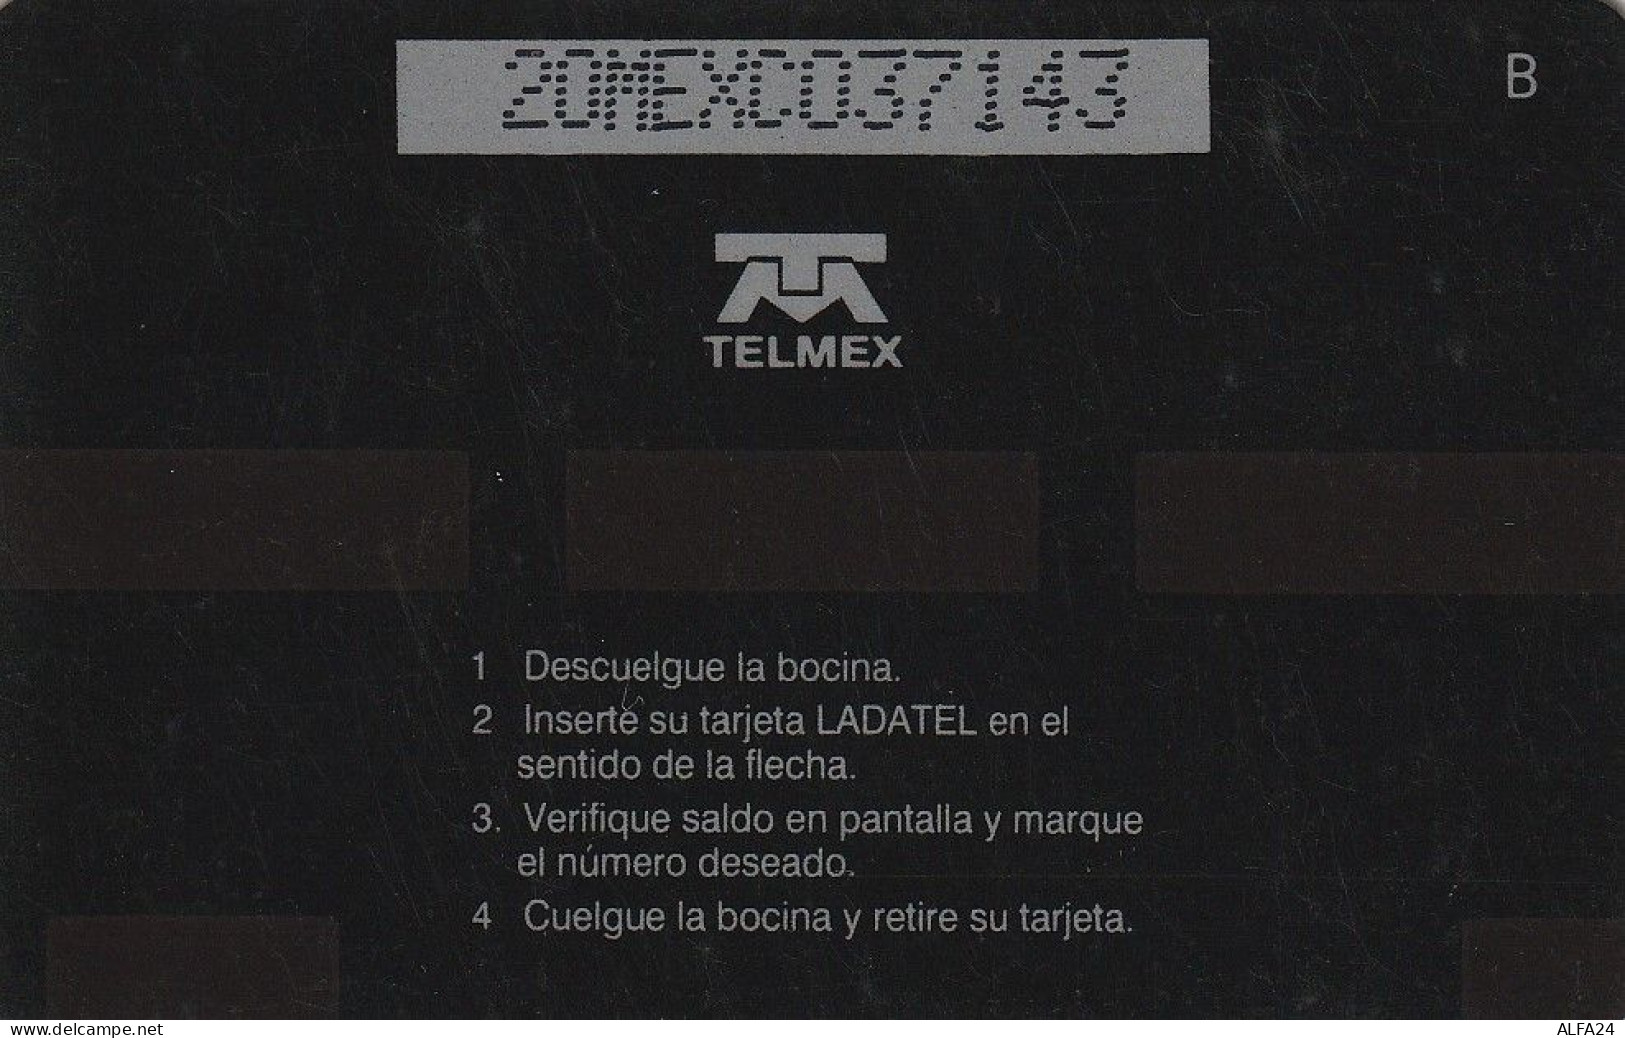 PHONE CARD MESSICO GPT (E67.27.2 - Mexiko